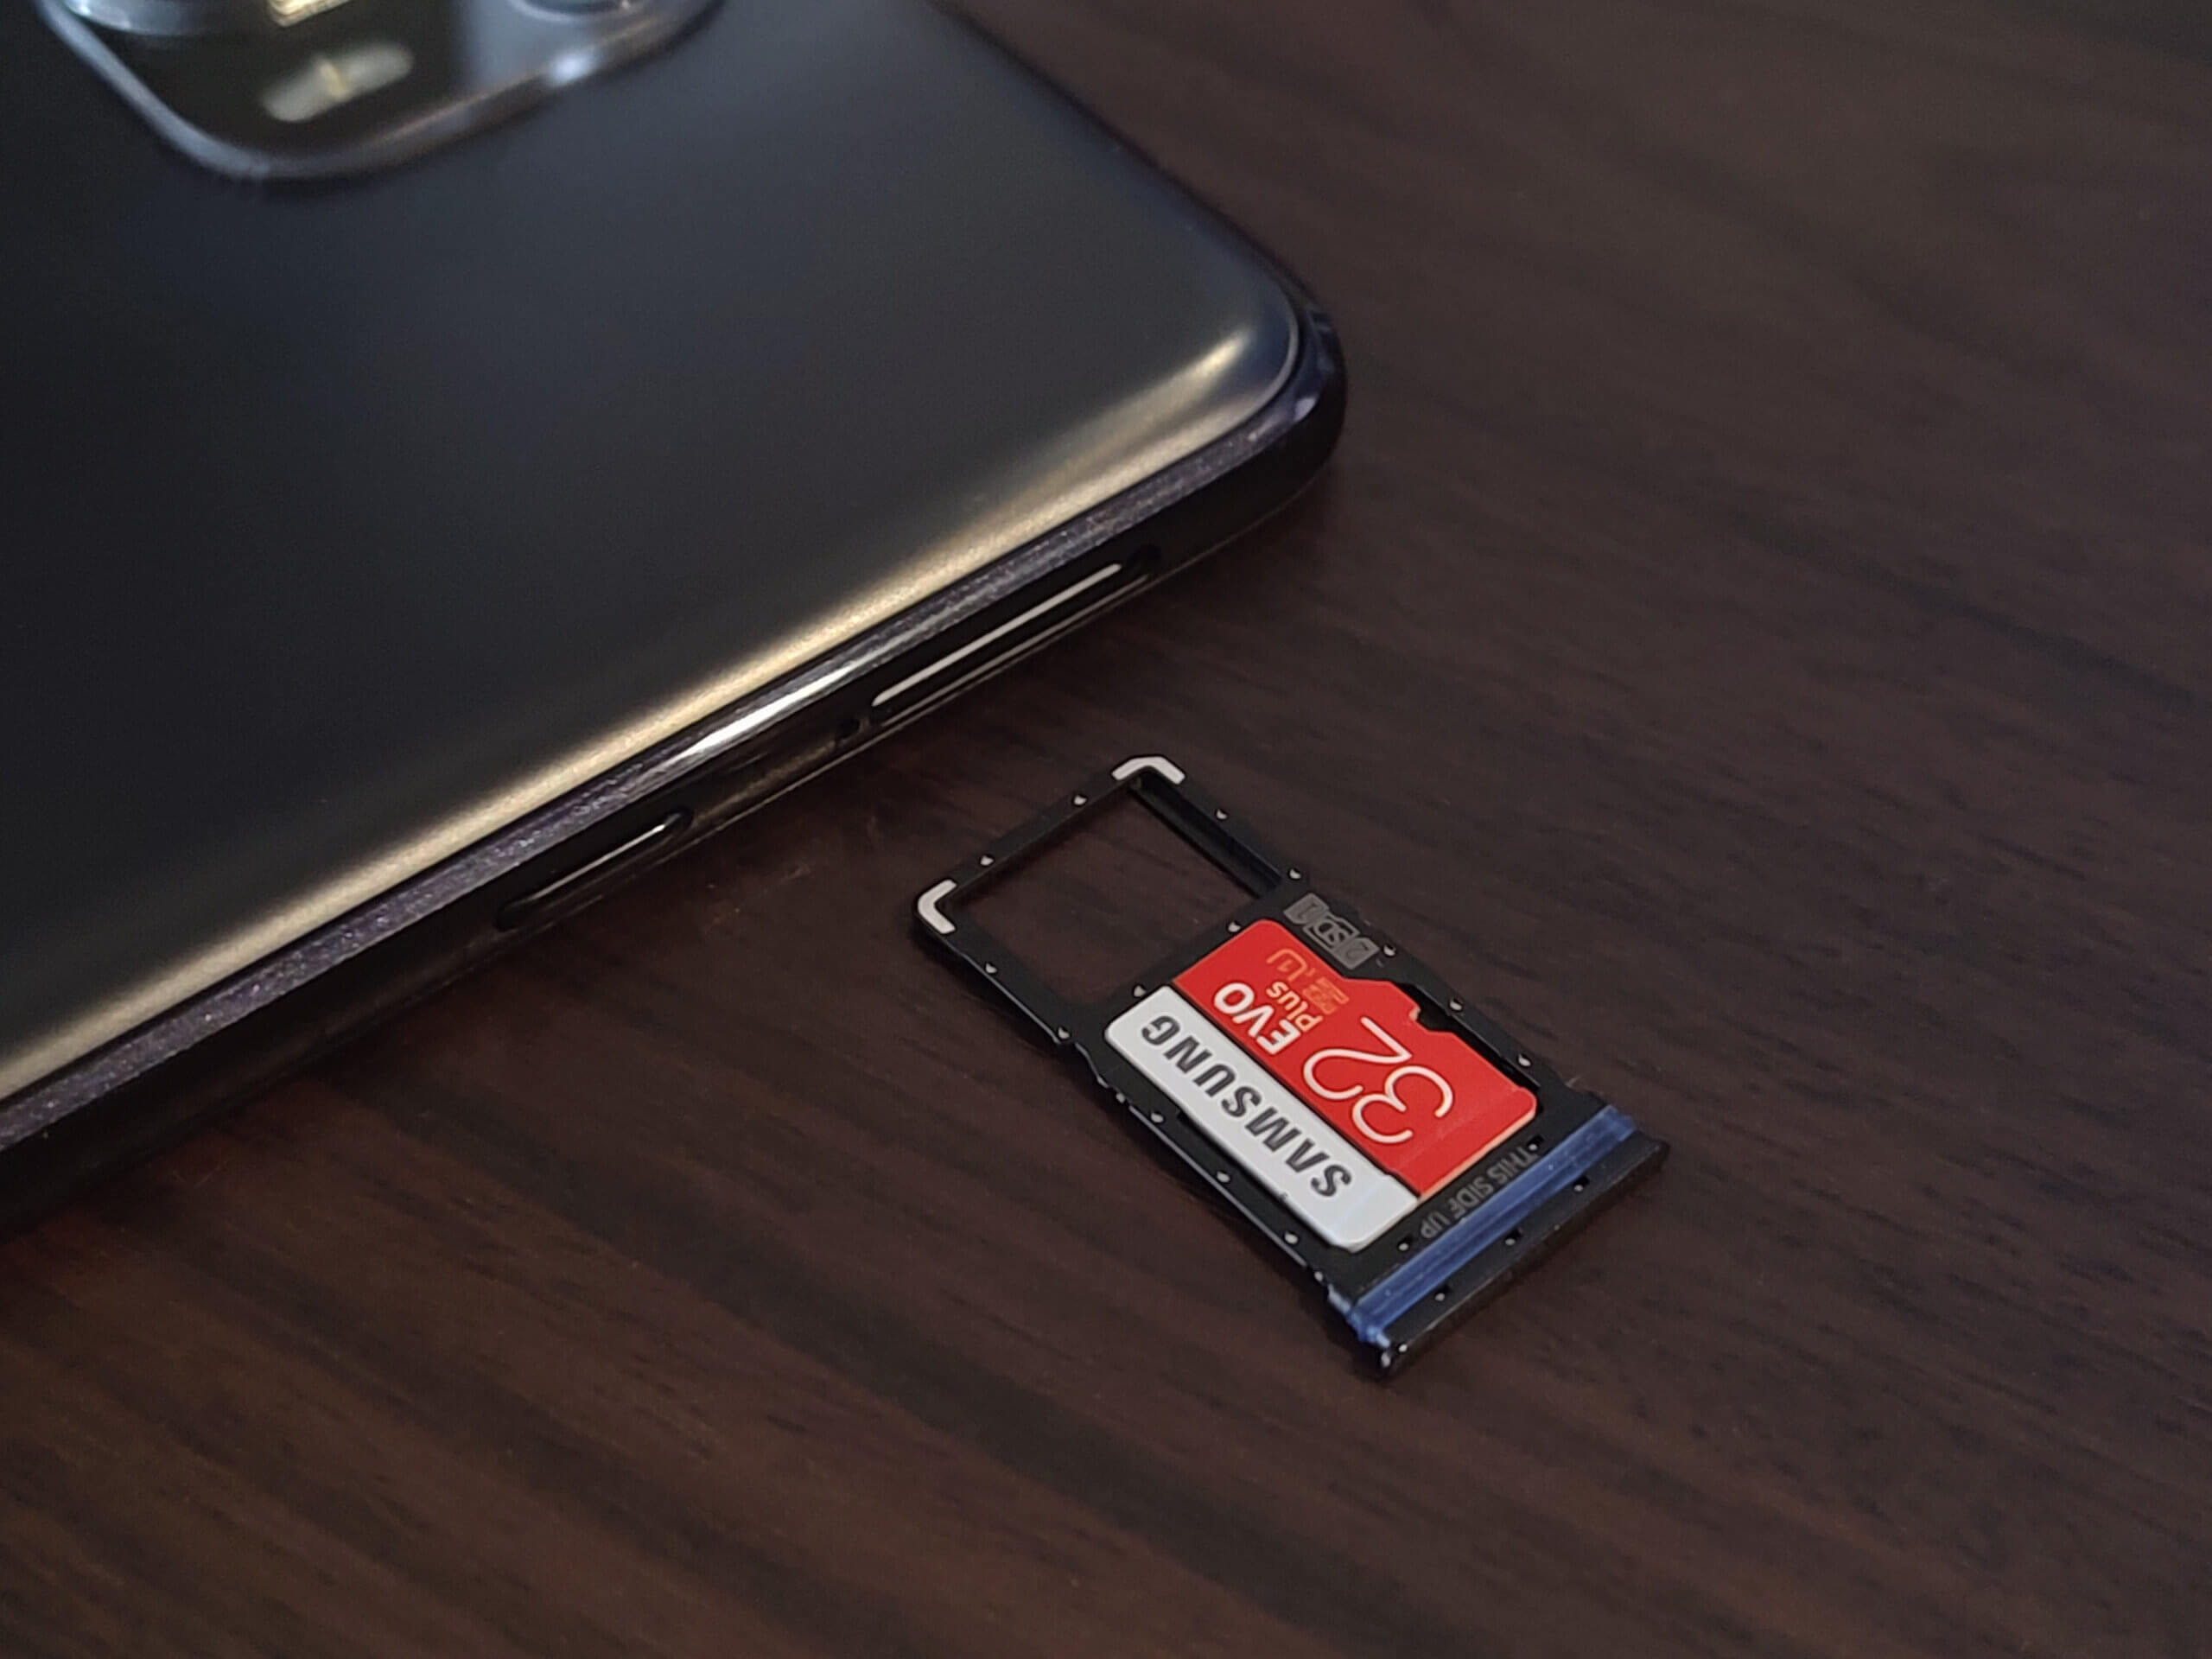 ★絶版品★ Redmi Note 10 Pro Gray ケース、SDカード付き スマートフォン本体